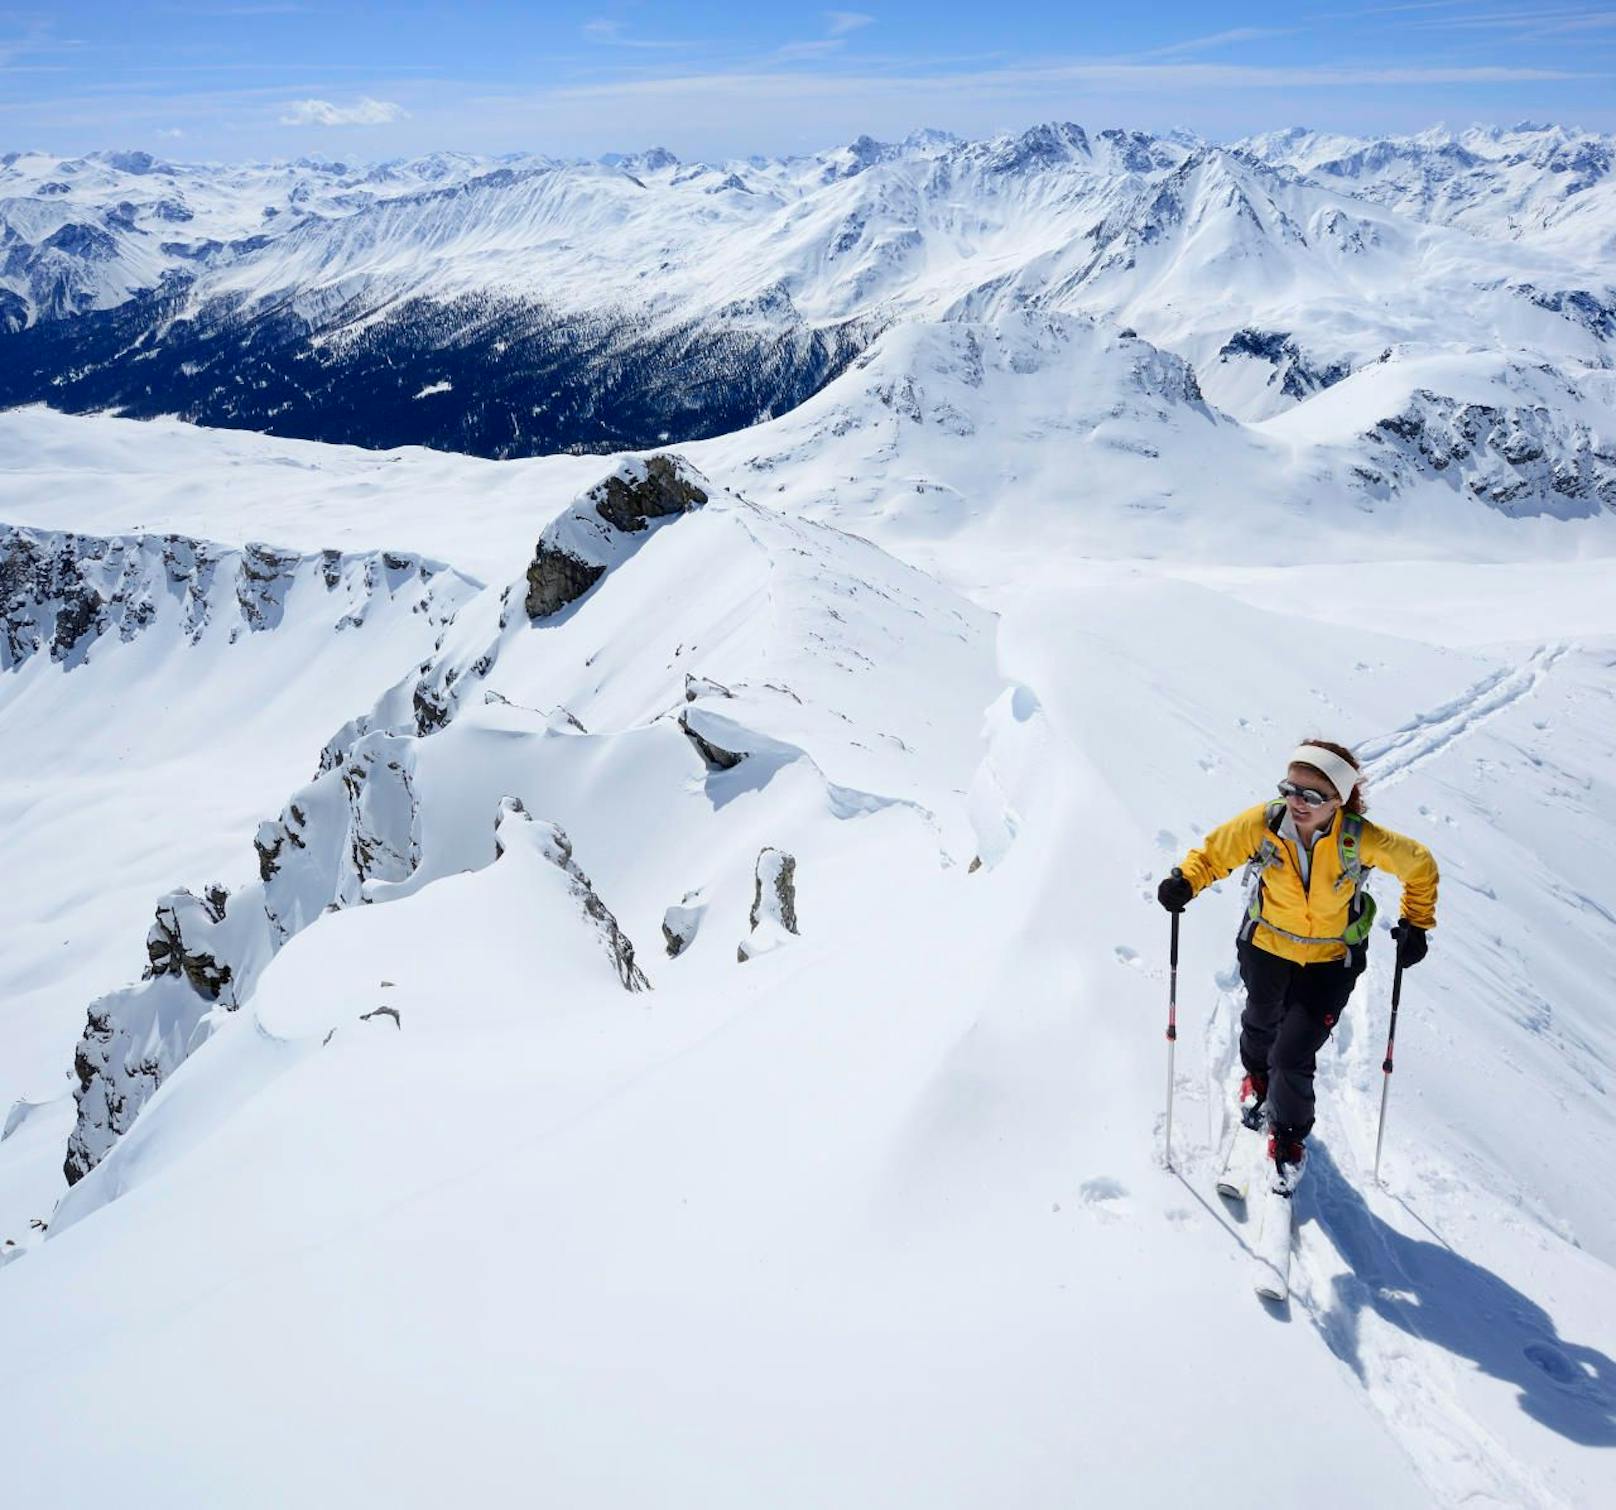 Skitourengeherin steigt zur Vallatscha auf, Livignoalpen im Hintergrund. Symbolfoto.